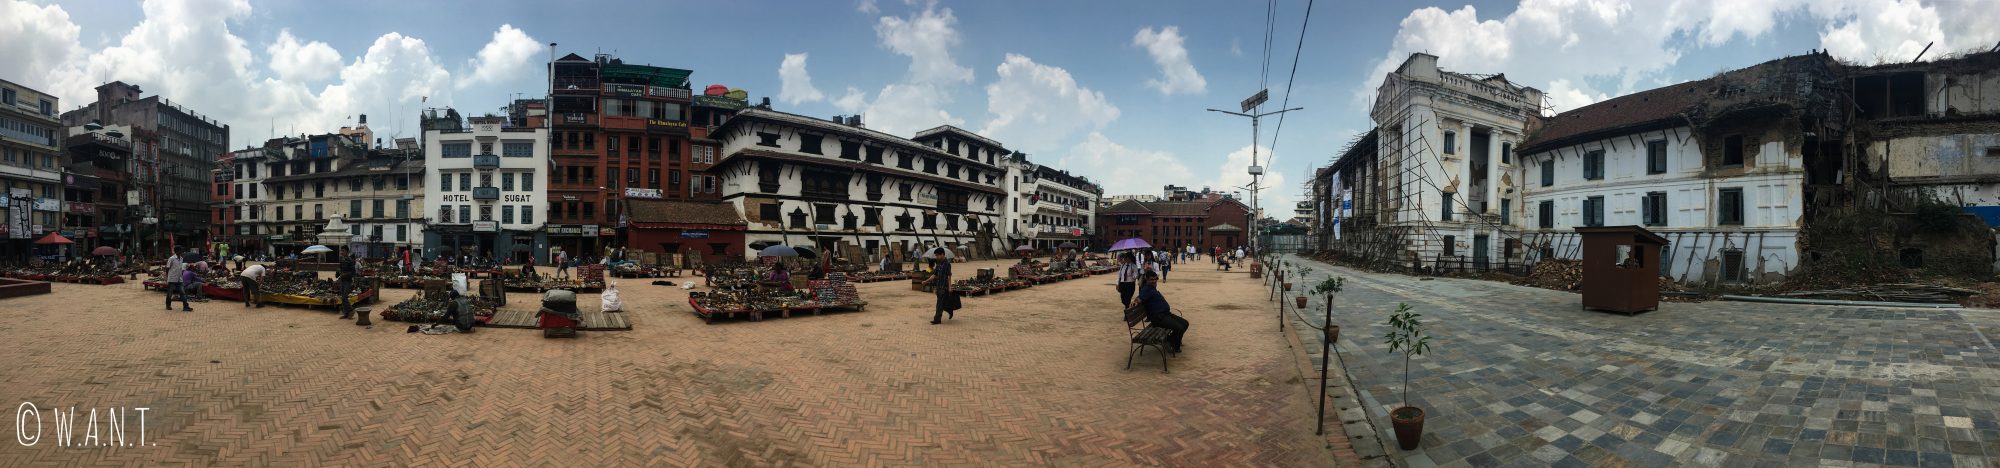 Panorama d'une des places du Durbar Square de Katmandou